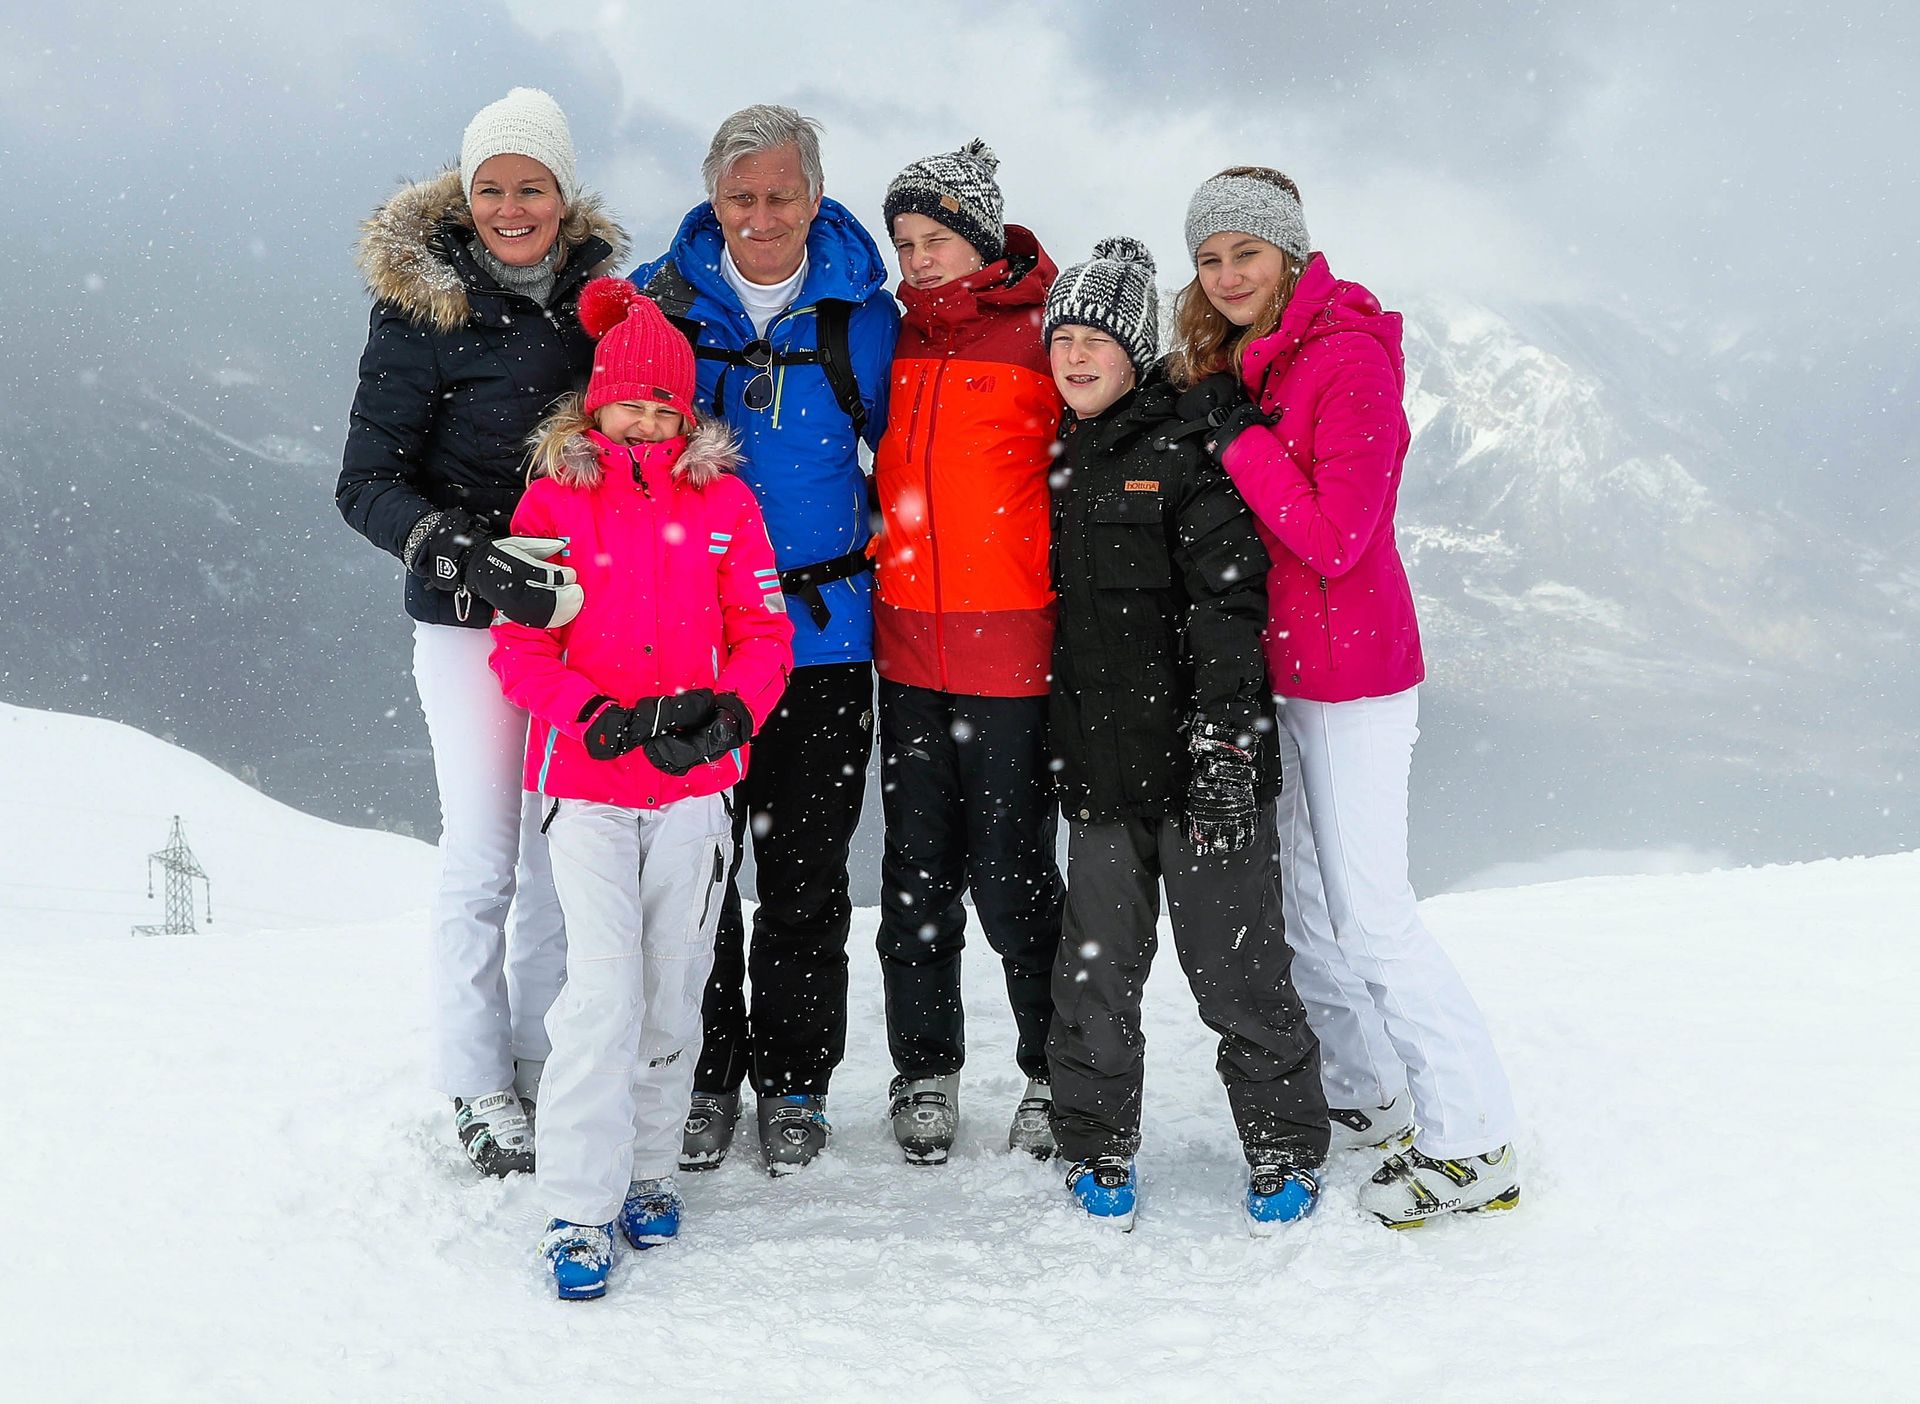 Koninklijk_gezin_Belgie_skivakantie.jpg